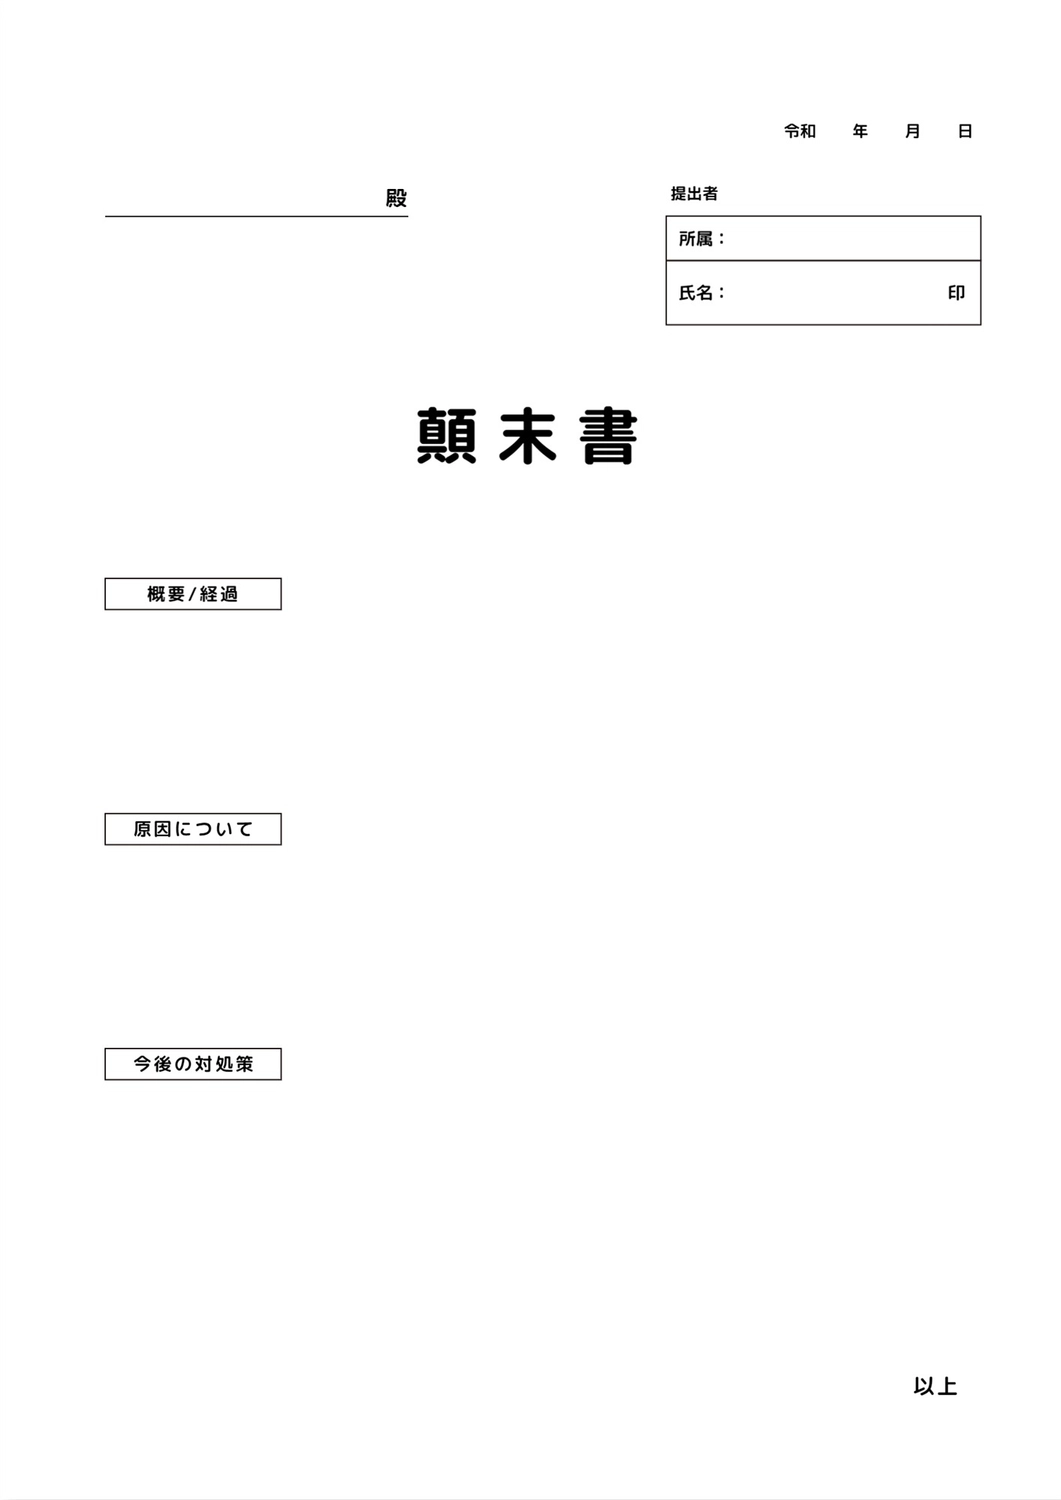 顛末書テンプレート, Công ty, văn phòng Chính phủ, Lá thư xin lỗi, Tài liệu A4 mẫu